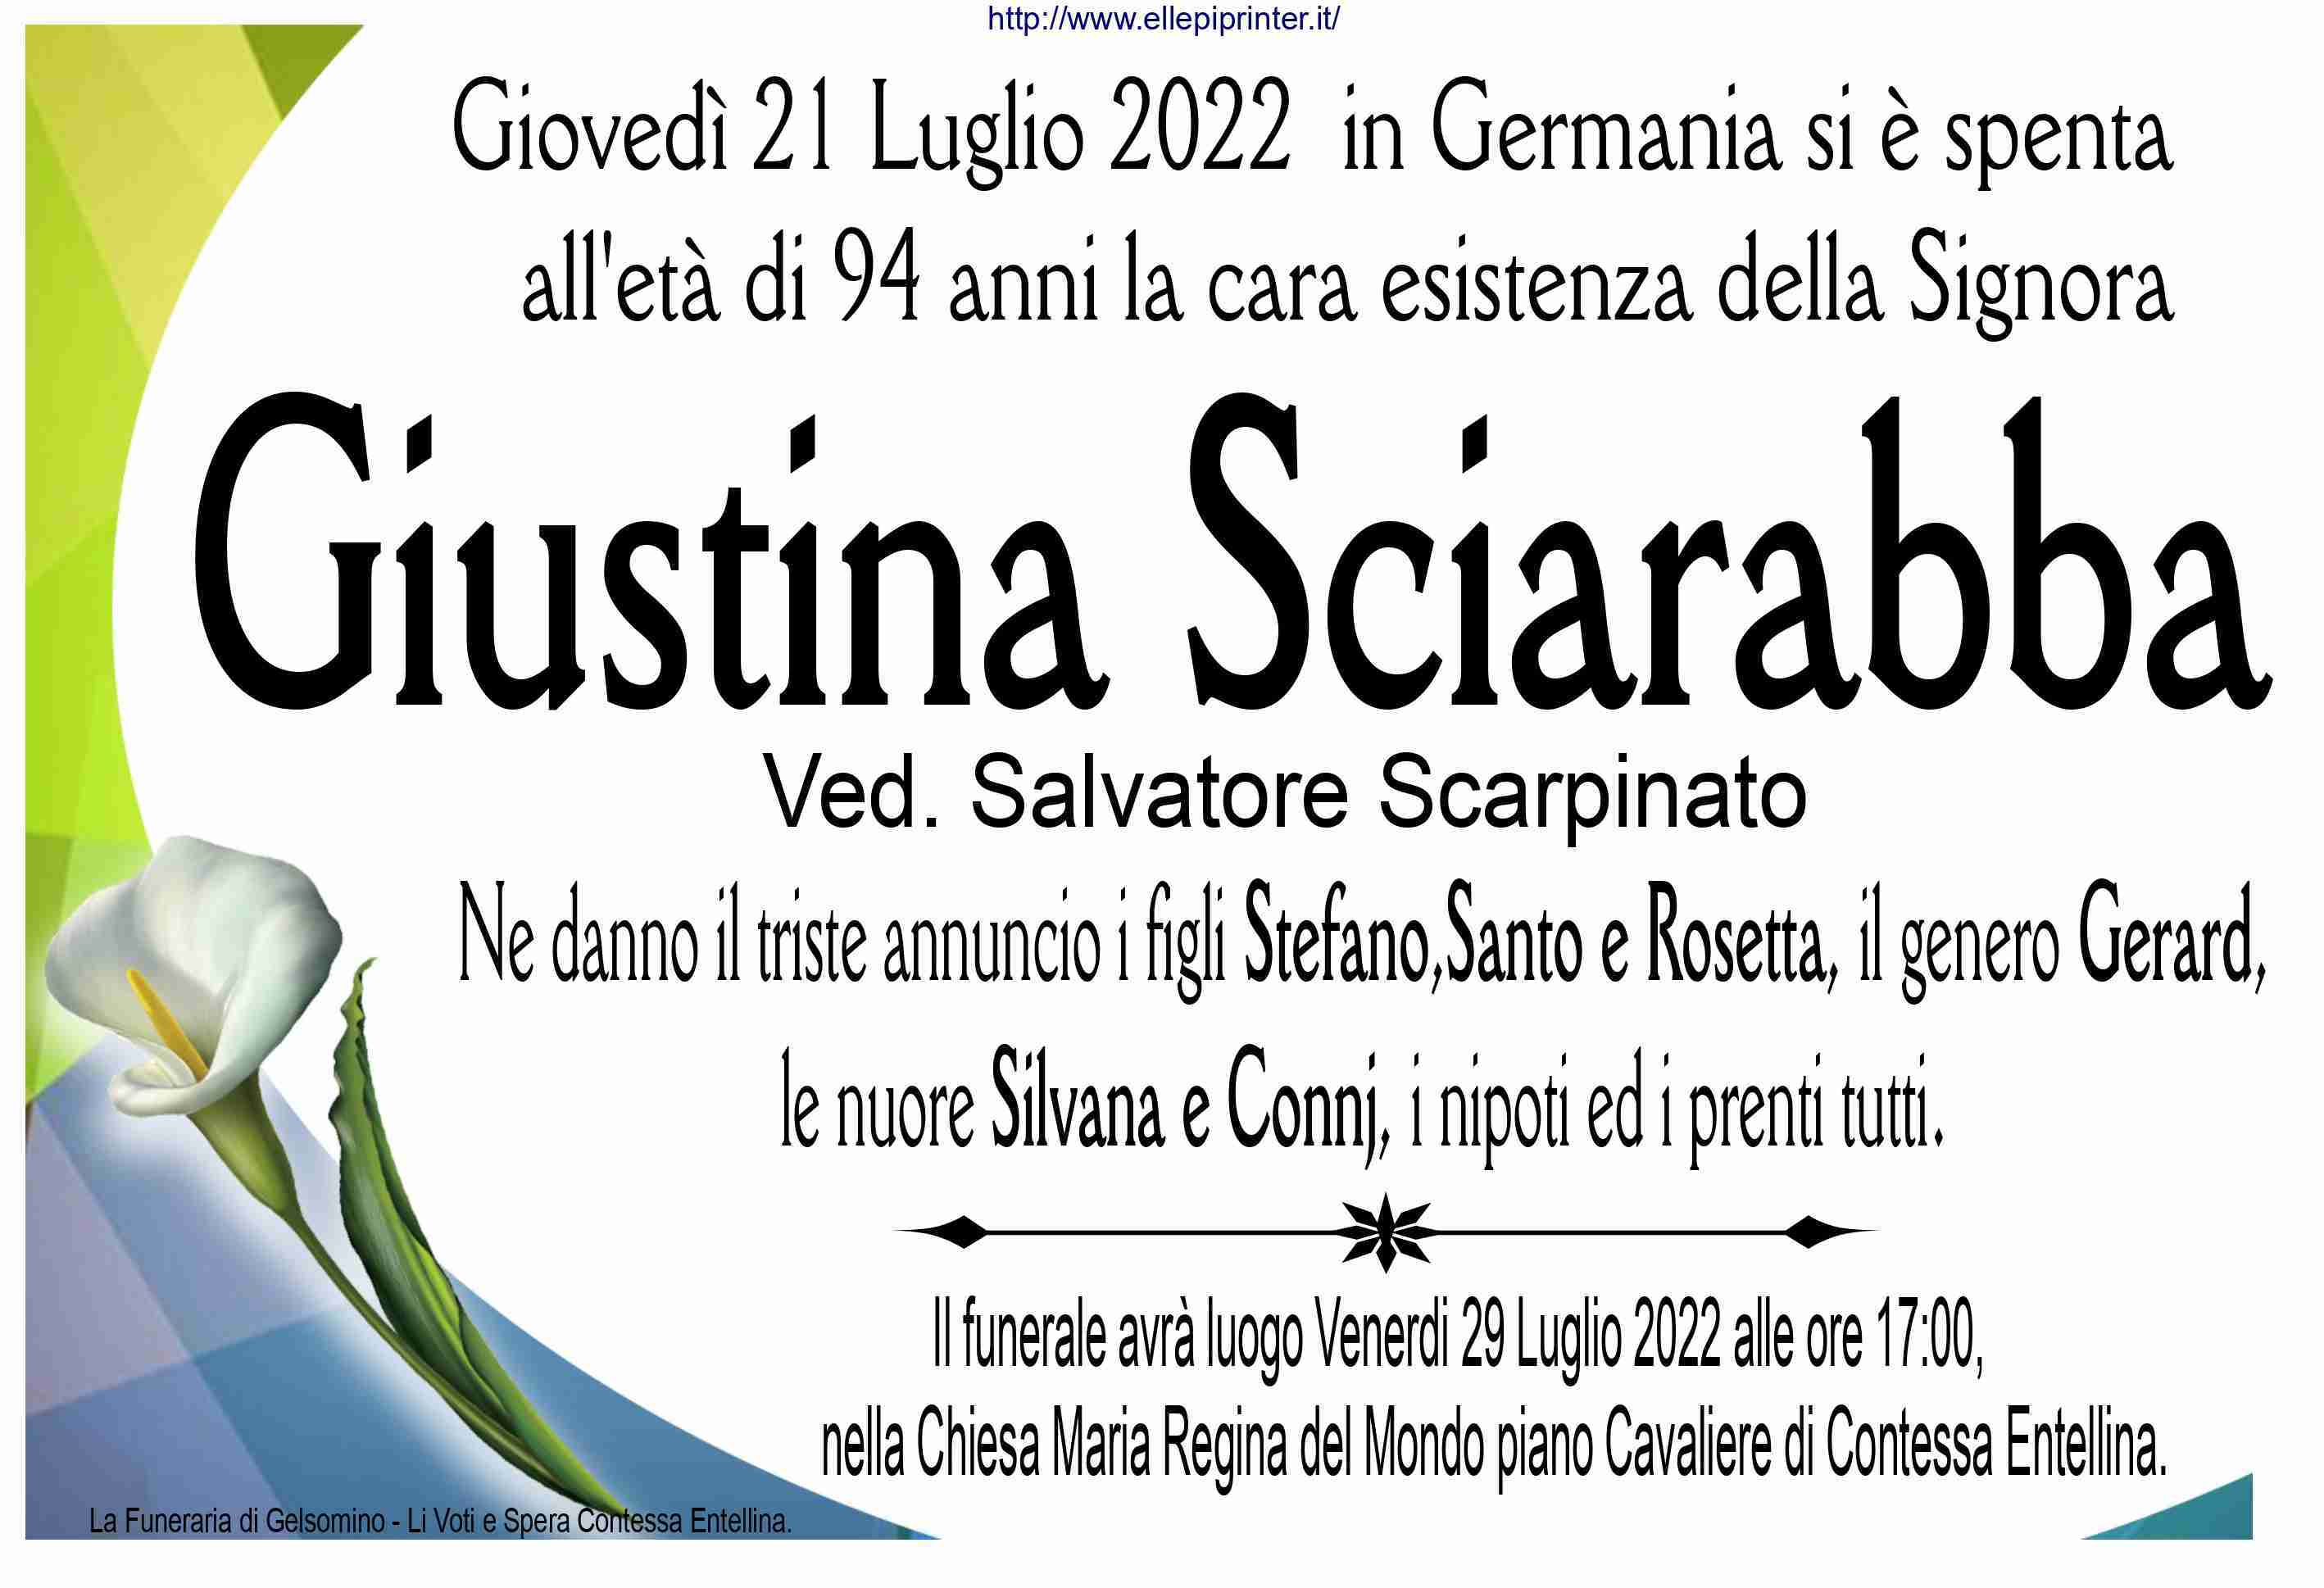 Giustina Sciarabba